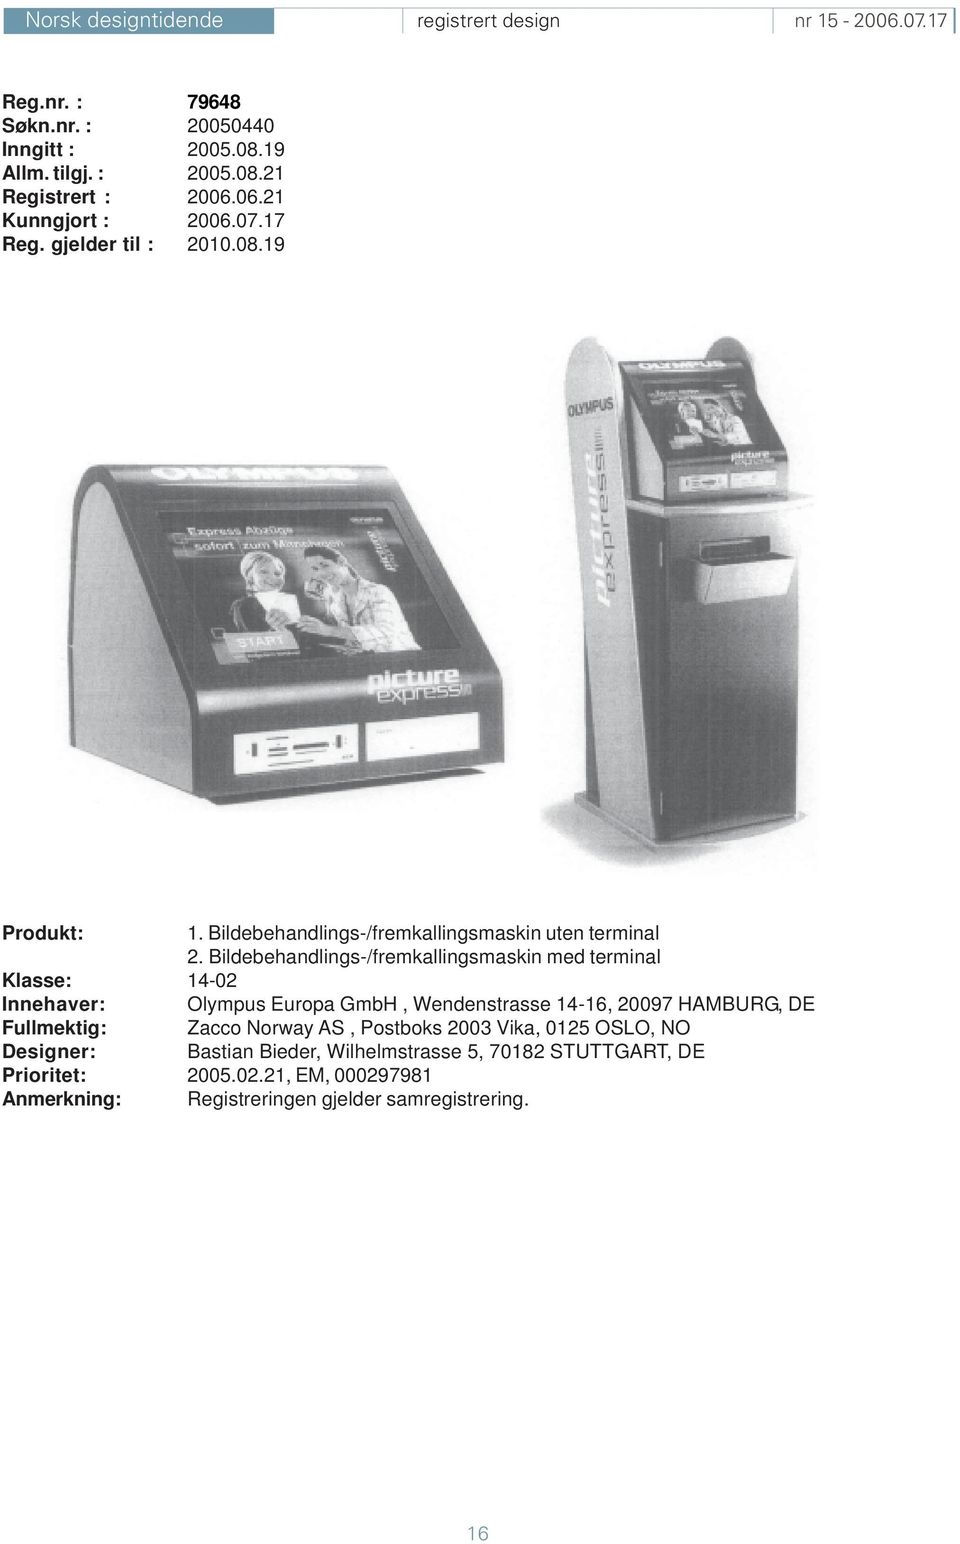 Bildebehandlings-/fremkallingsmaskin med terminal Klasse: 14-02 Innehaver: Olympus Europa GmbH, Wendenstrasse 14-16, 20097 HAMBURG, DE